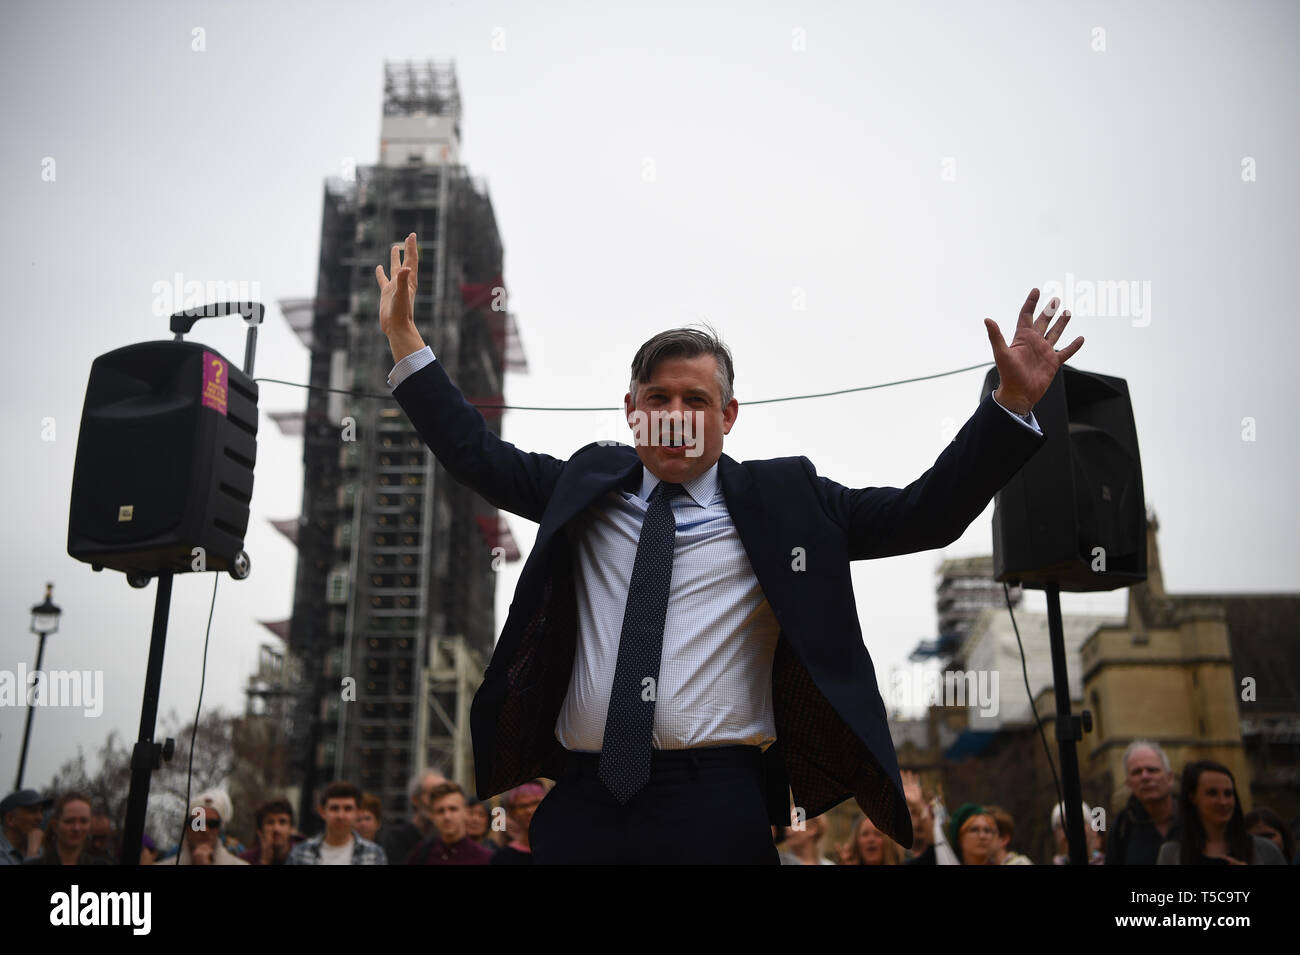 Ombra Segretario della salute Jon Ashworth parla durante una ribellione di estinzione protestare presso la piazza del parlamento di Westminster a Londra. Più di mille persone sono state arrestate durante il cambiamento climatico proteste a Londra come la polizia ha autorizzato i blocchi stradali responsabili per interruzioni nella capitale. Foto Stock